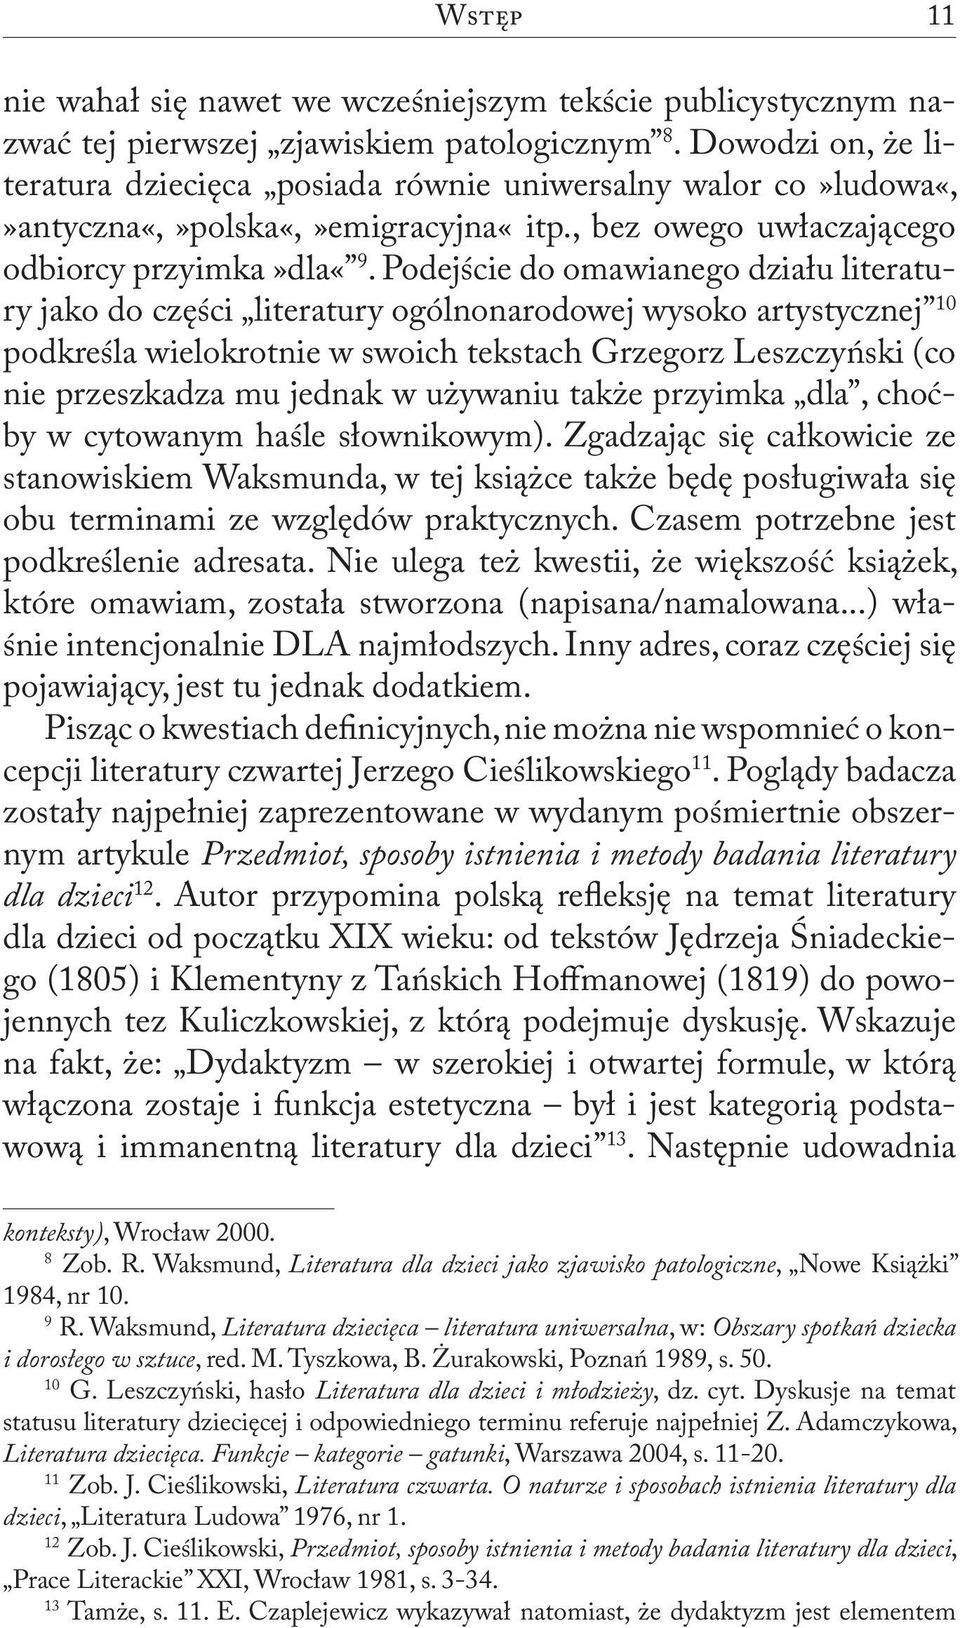 Podejście do omawianego działu literatury jako do części literatury ogólnonarodowej wysoko artystycznej 10 podkreśla wielokrotnie w swoich tekstach Grzegorz Leszczyński (co nie przeszkadza mu jednak